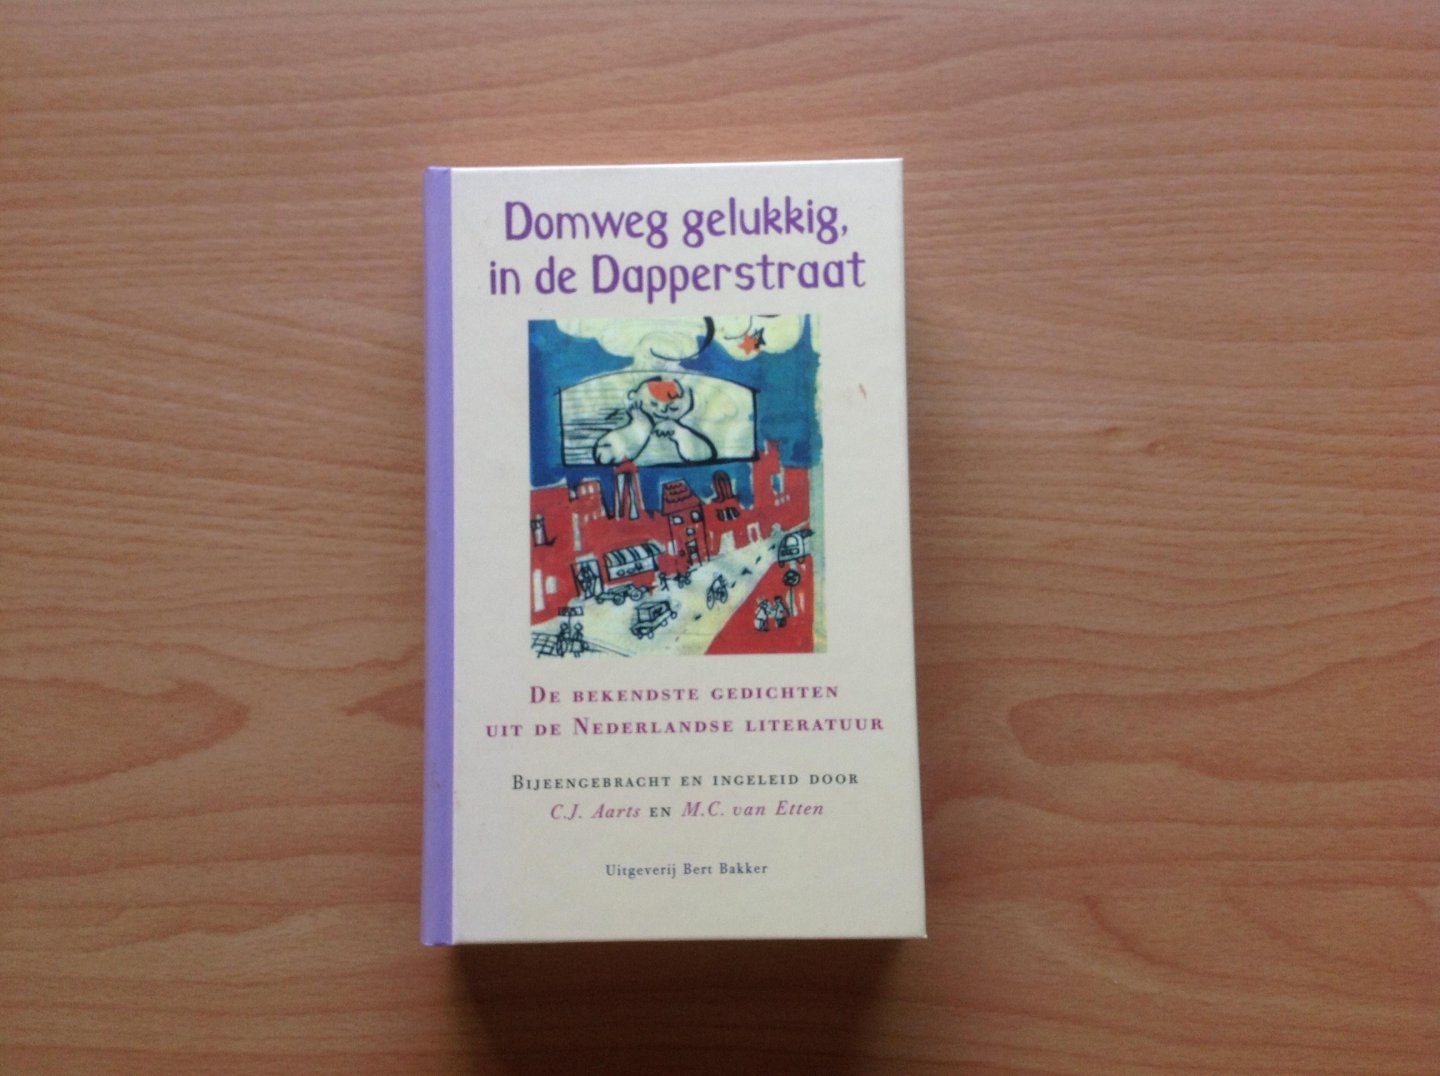  - Domweg gelukkig, in de Dapperstraat, De bekendste gedichten uit de Nederlandse literatuur / druk 14